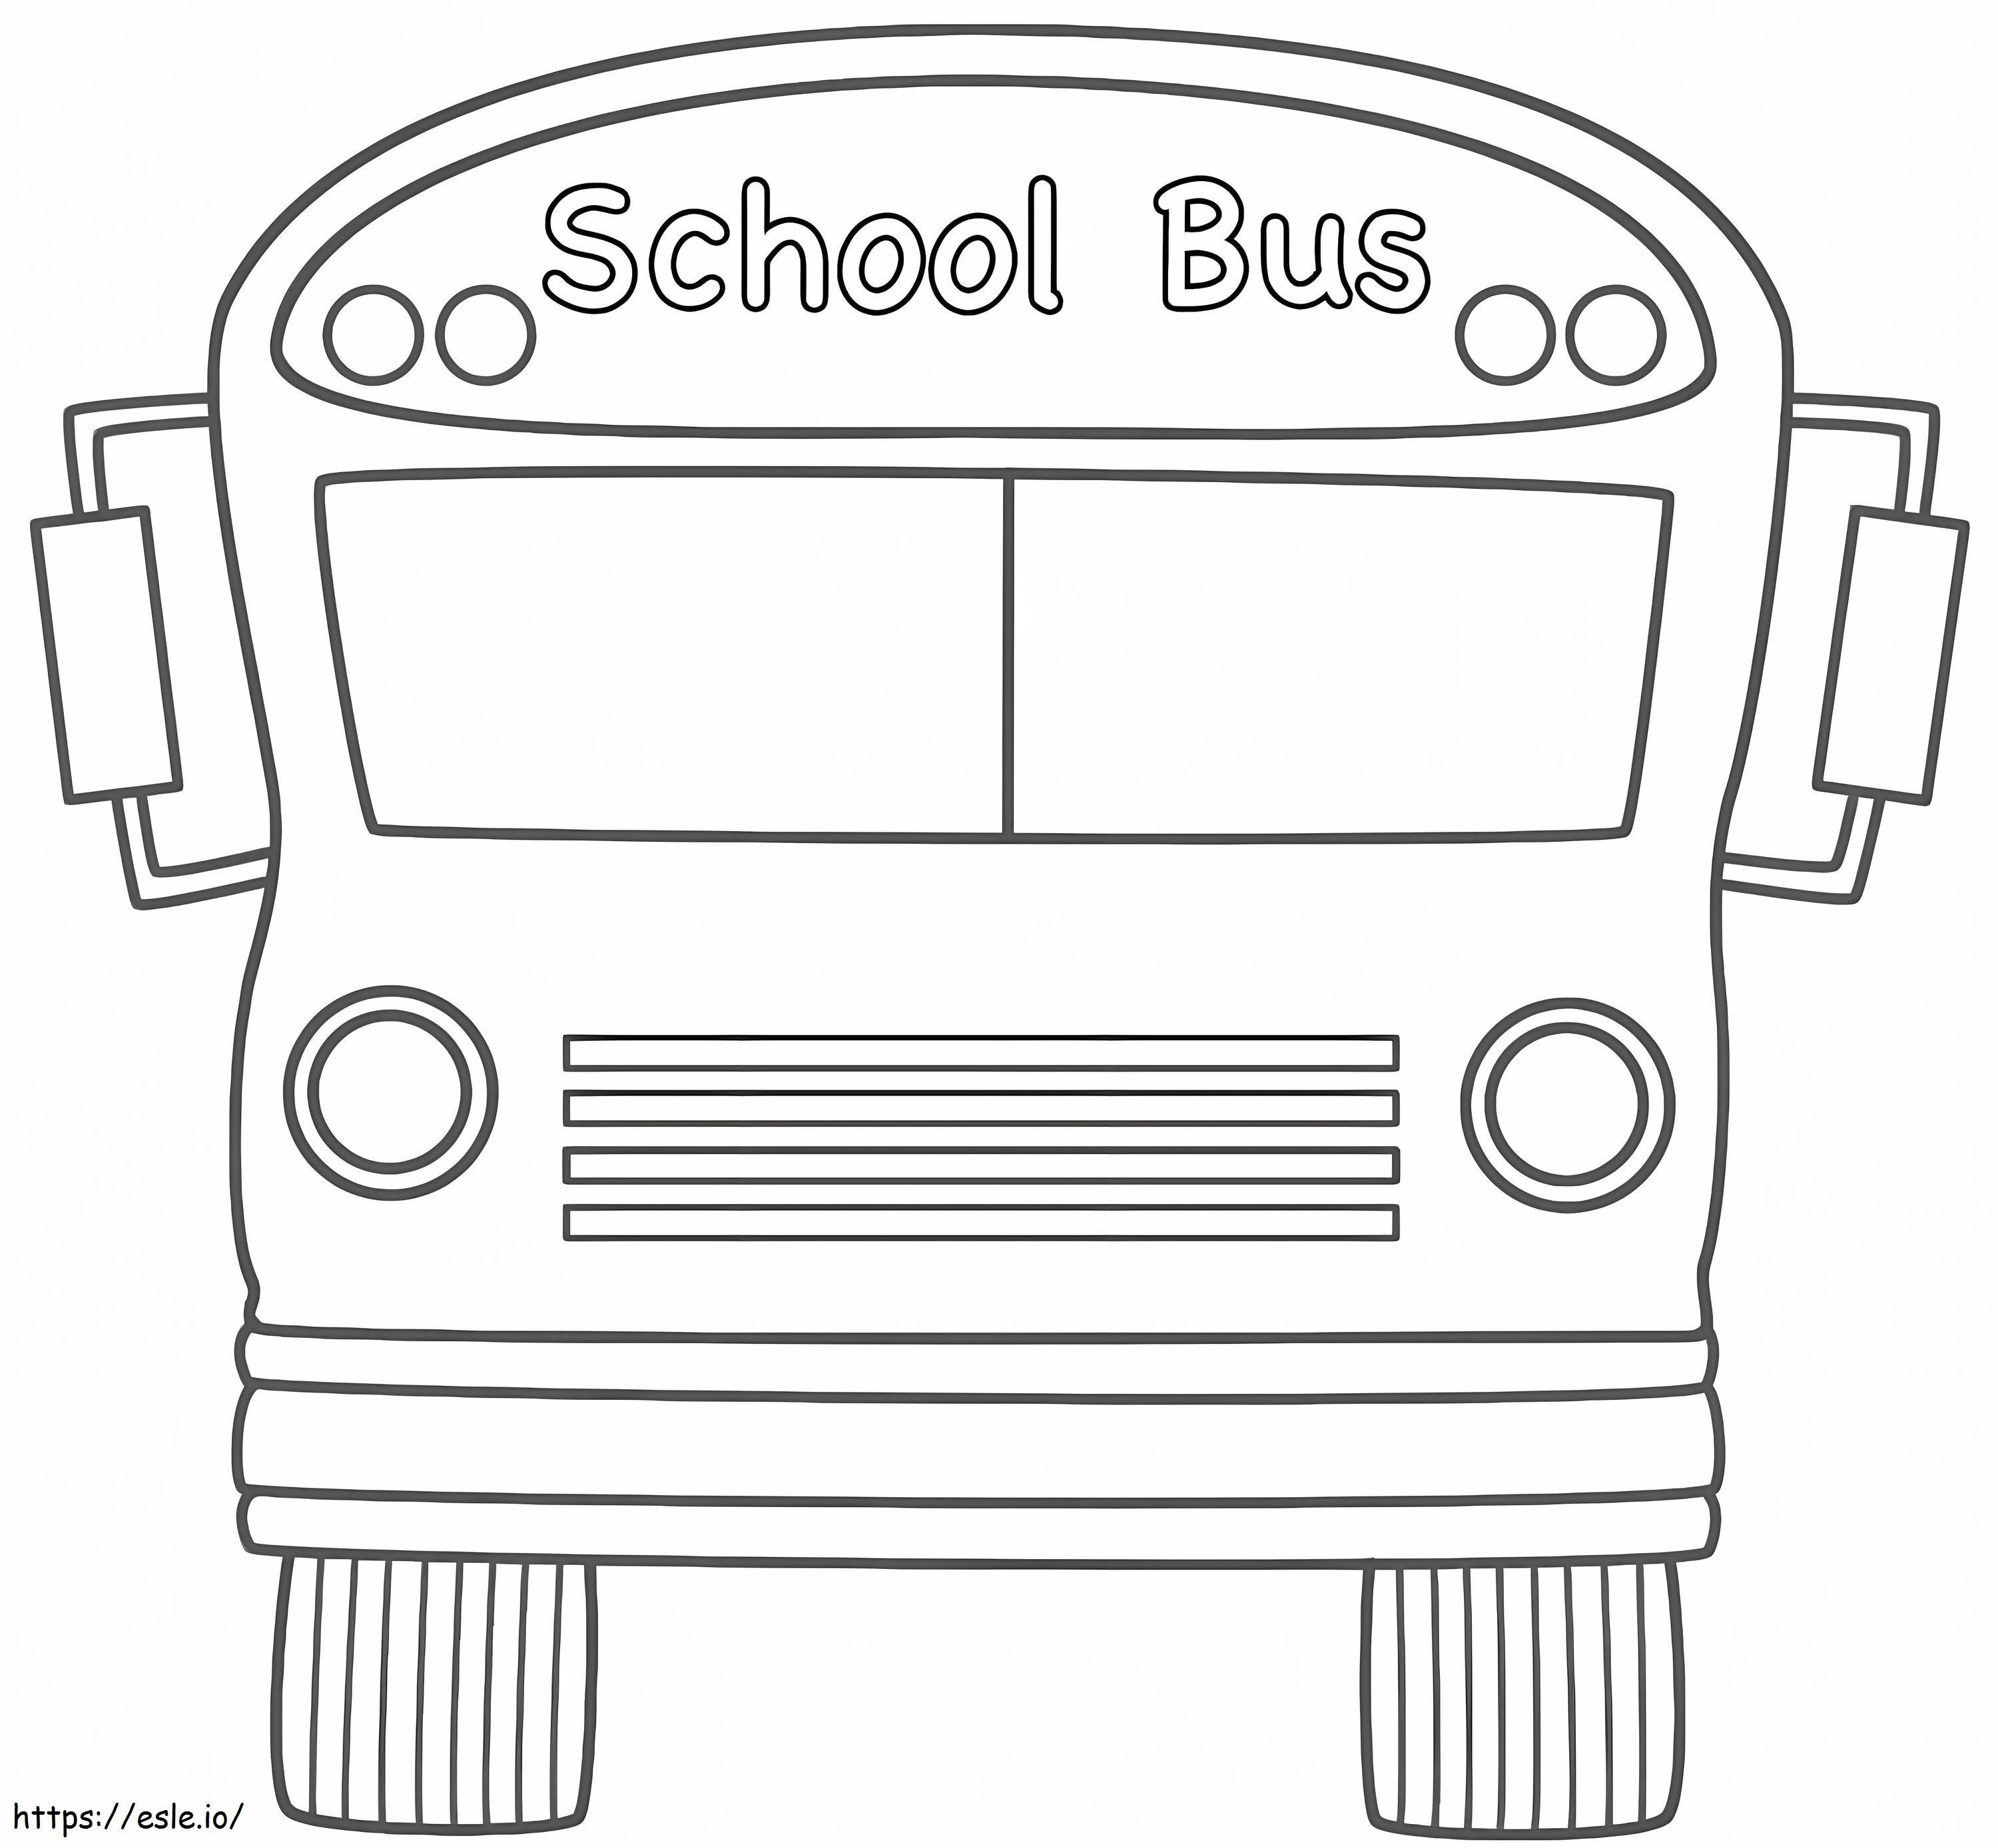 Okul Otobüsü Koleksiyonu boyama